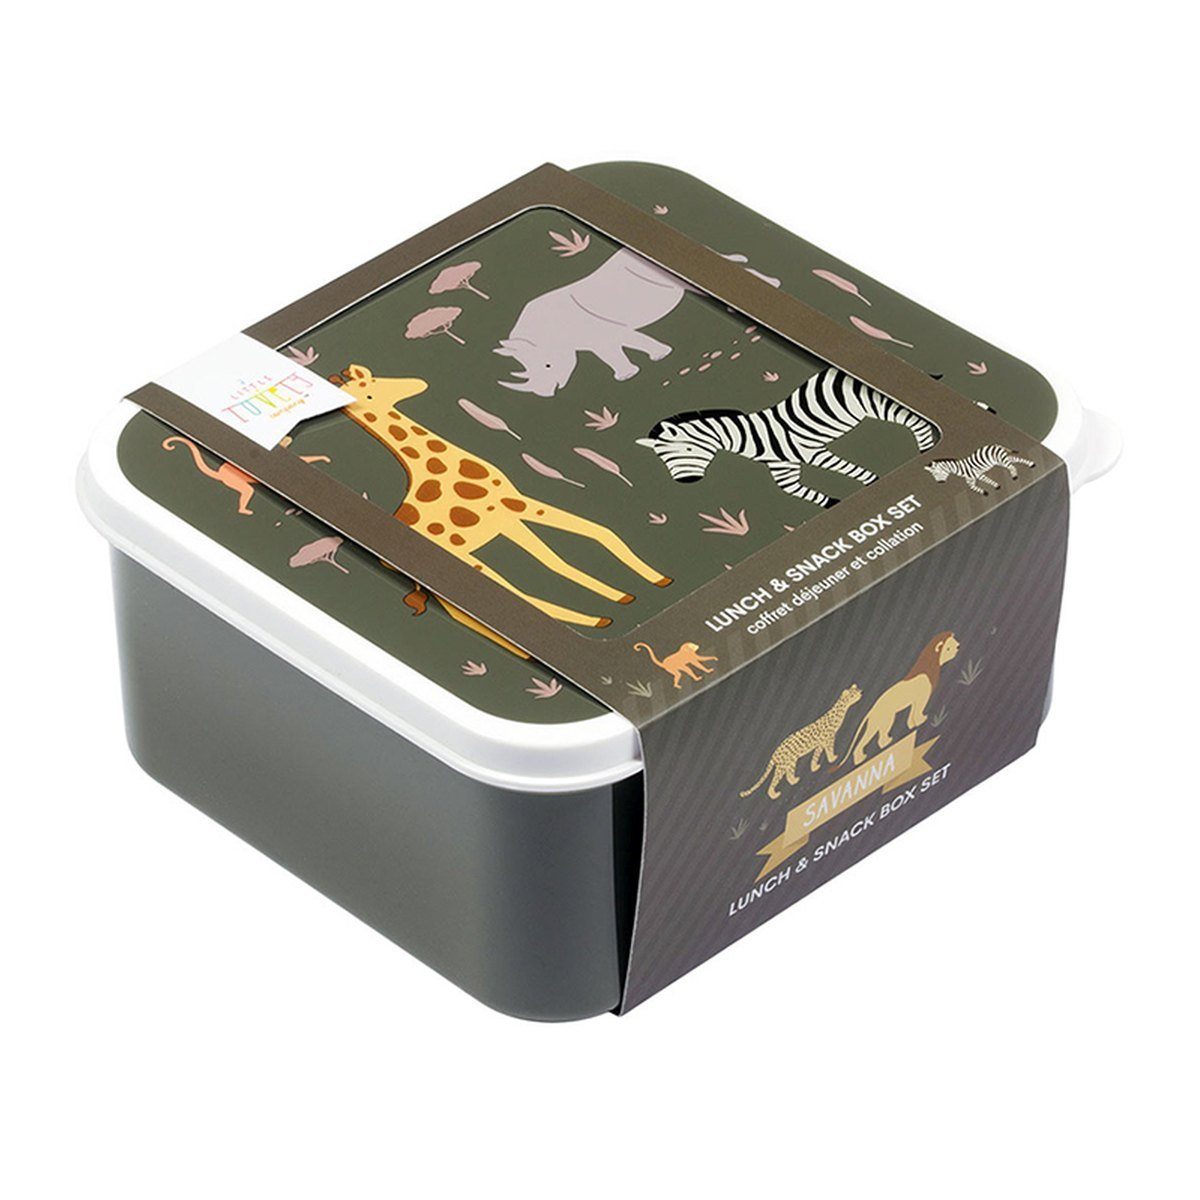 Brotdosen Savanne lovely Company Lunchbox little 4er Größen unterschiedlichen in A Set